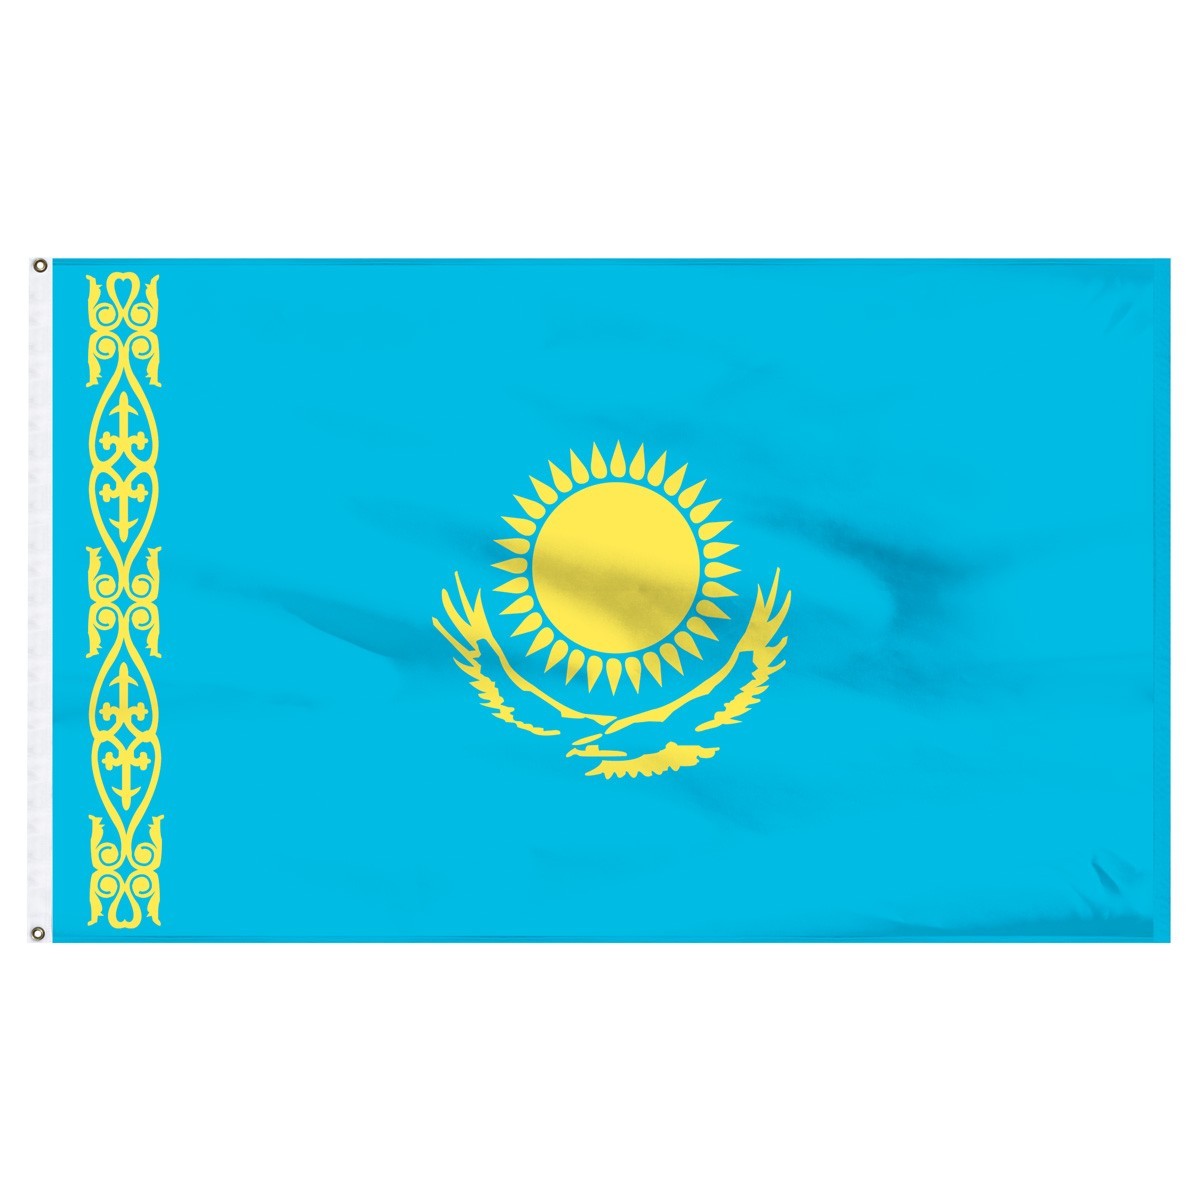 Kazakhstan 4' x 6' Outdoor Nylon Flag